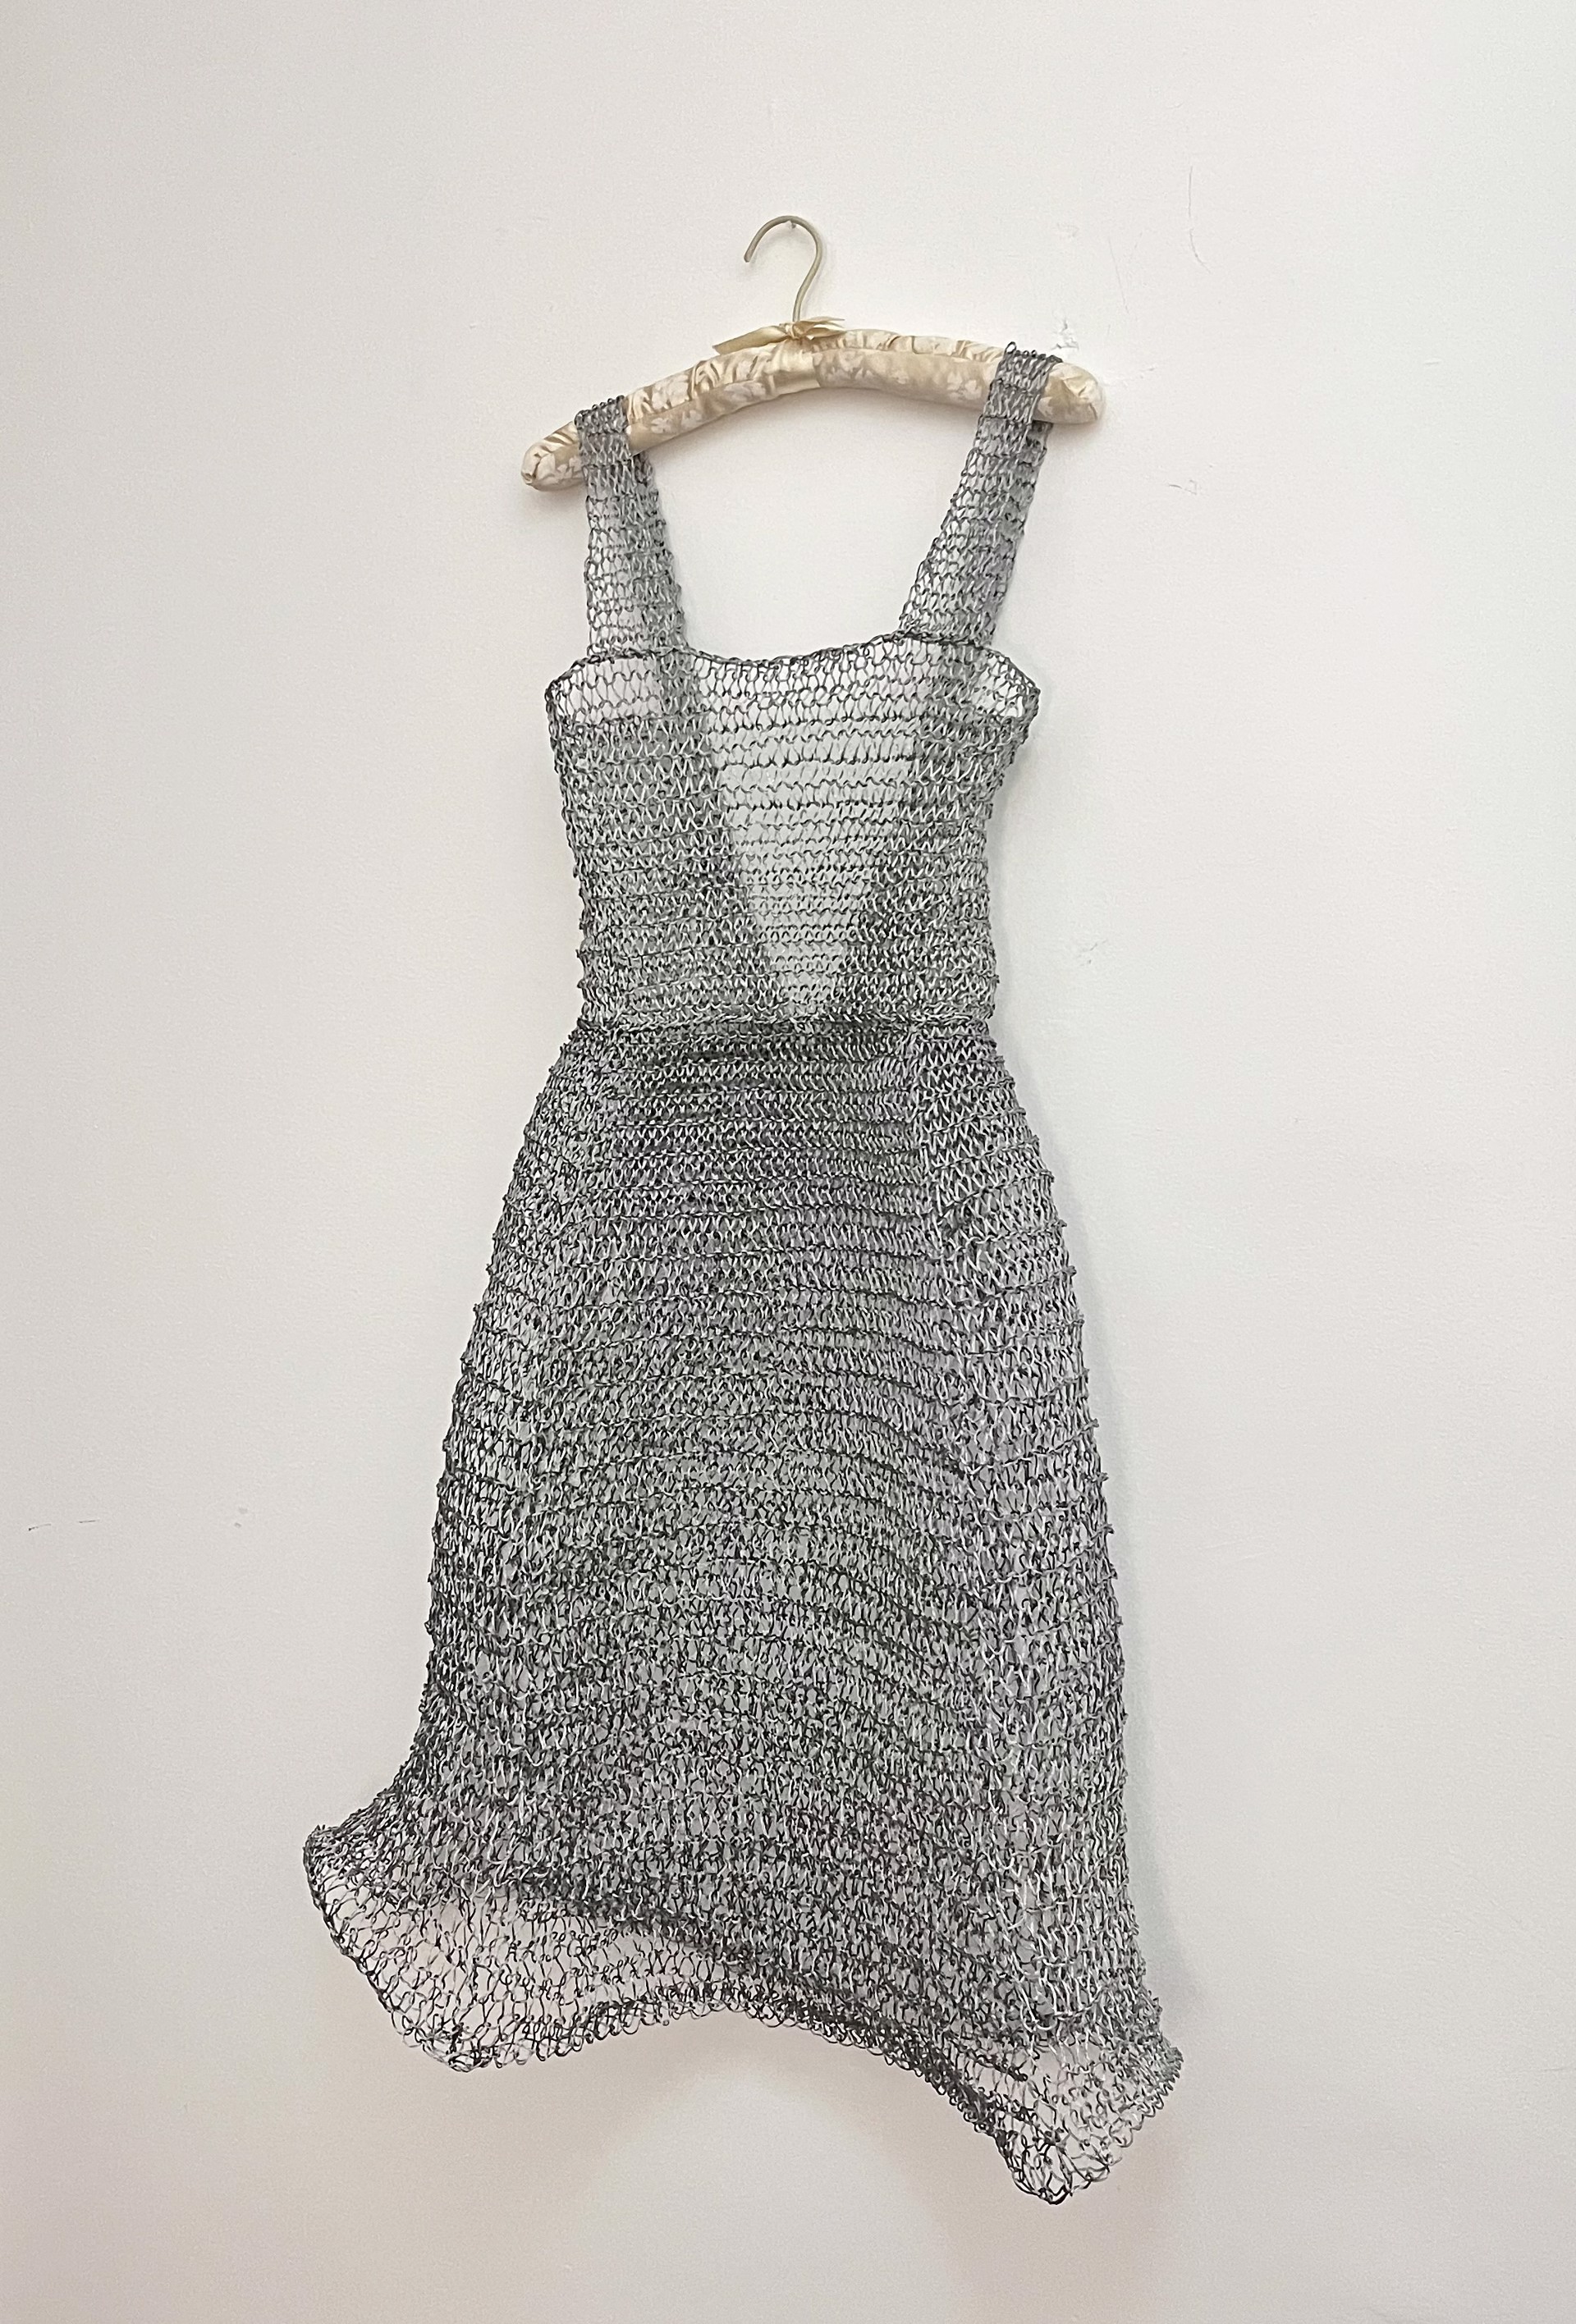 Dress by Sarah Mosteller